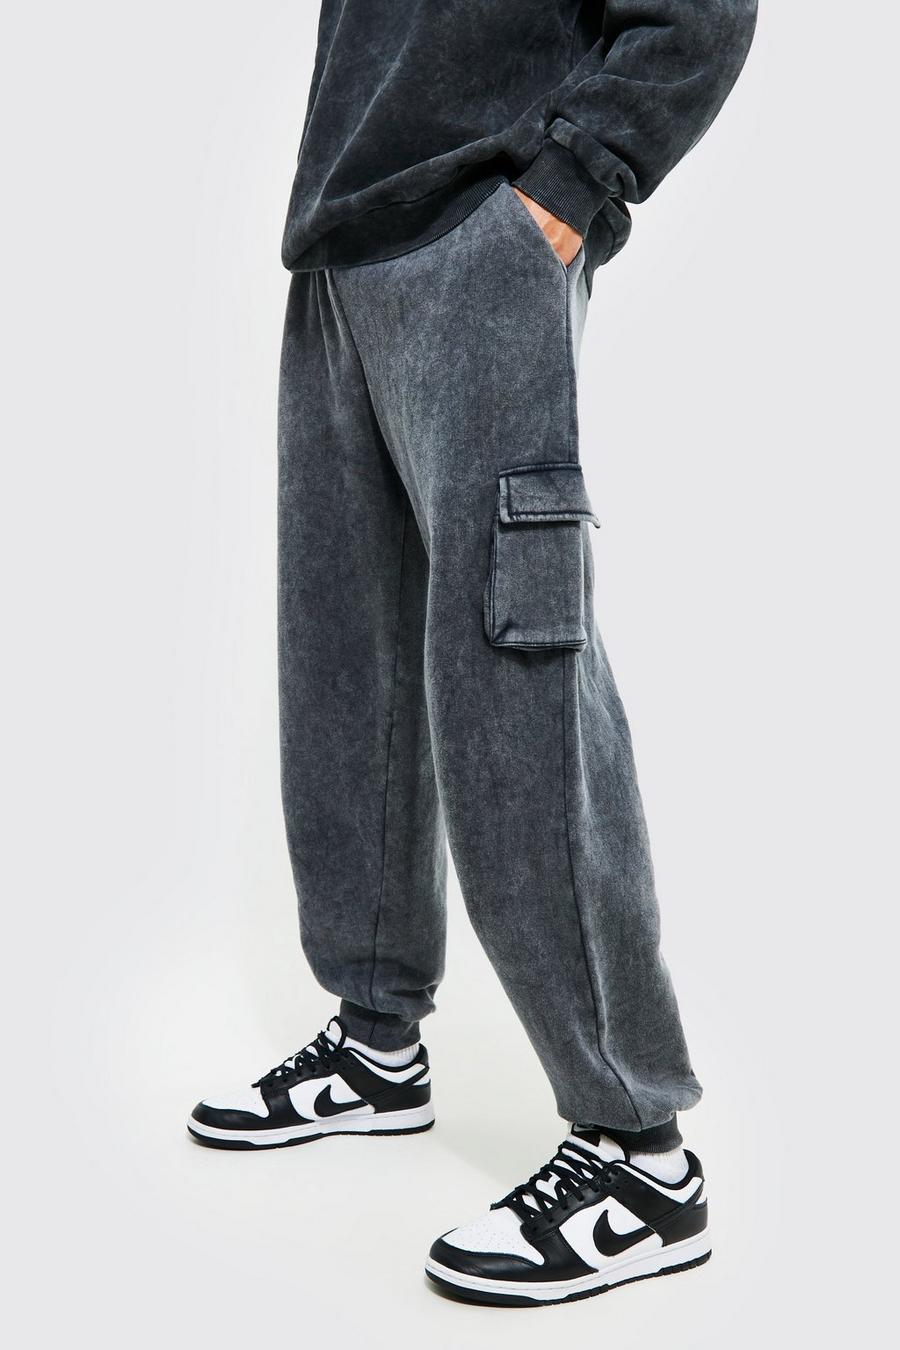 Pantalón deportivo Tall oversize cargo con lavado de ácido, Charcoal gris